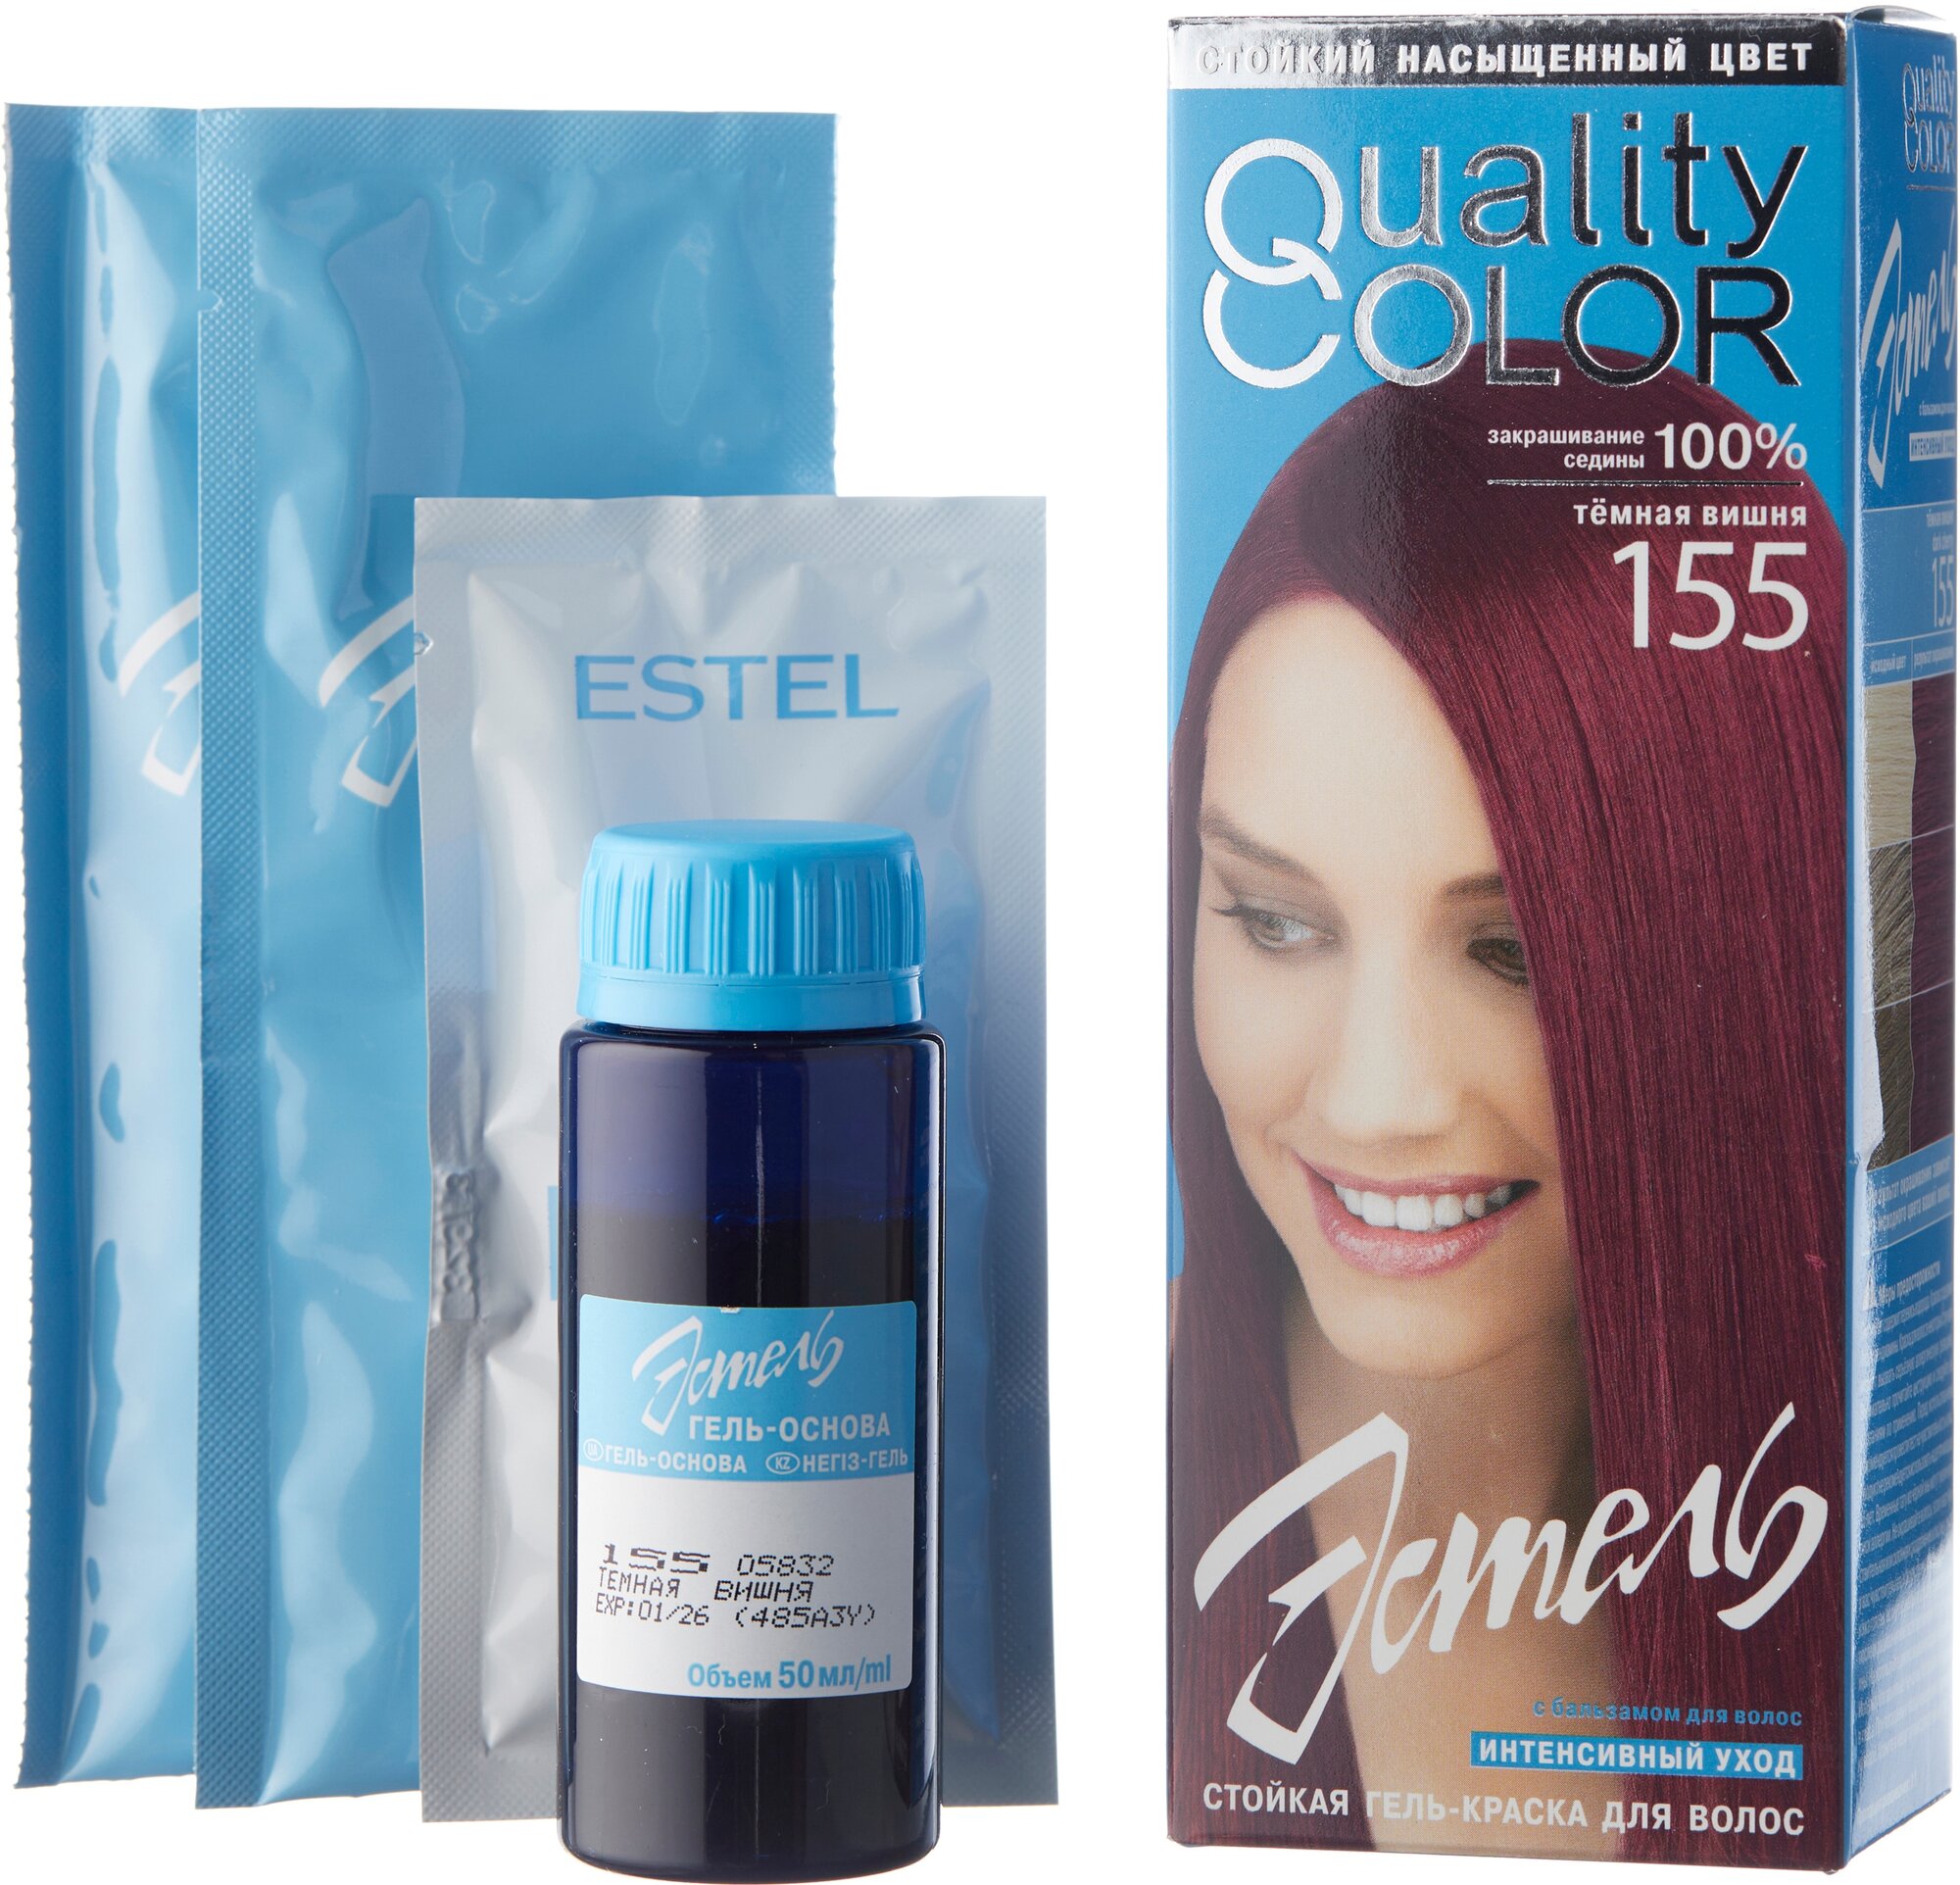 ESTEL Vital Quality Color стойкая гель-краска для волос